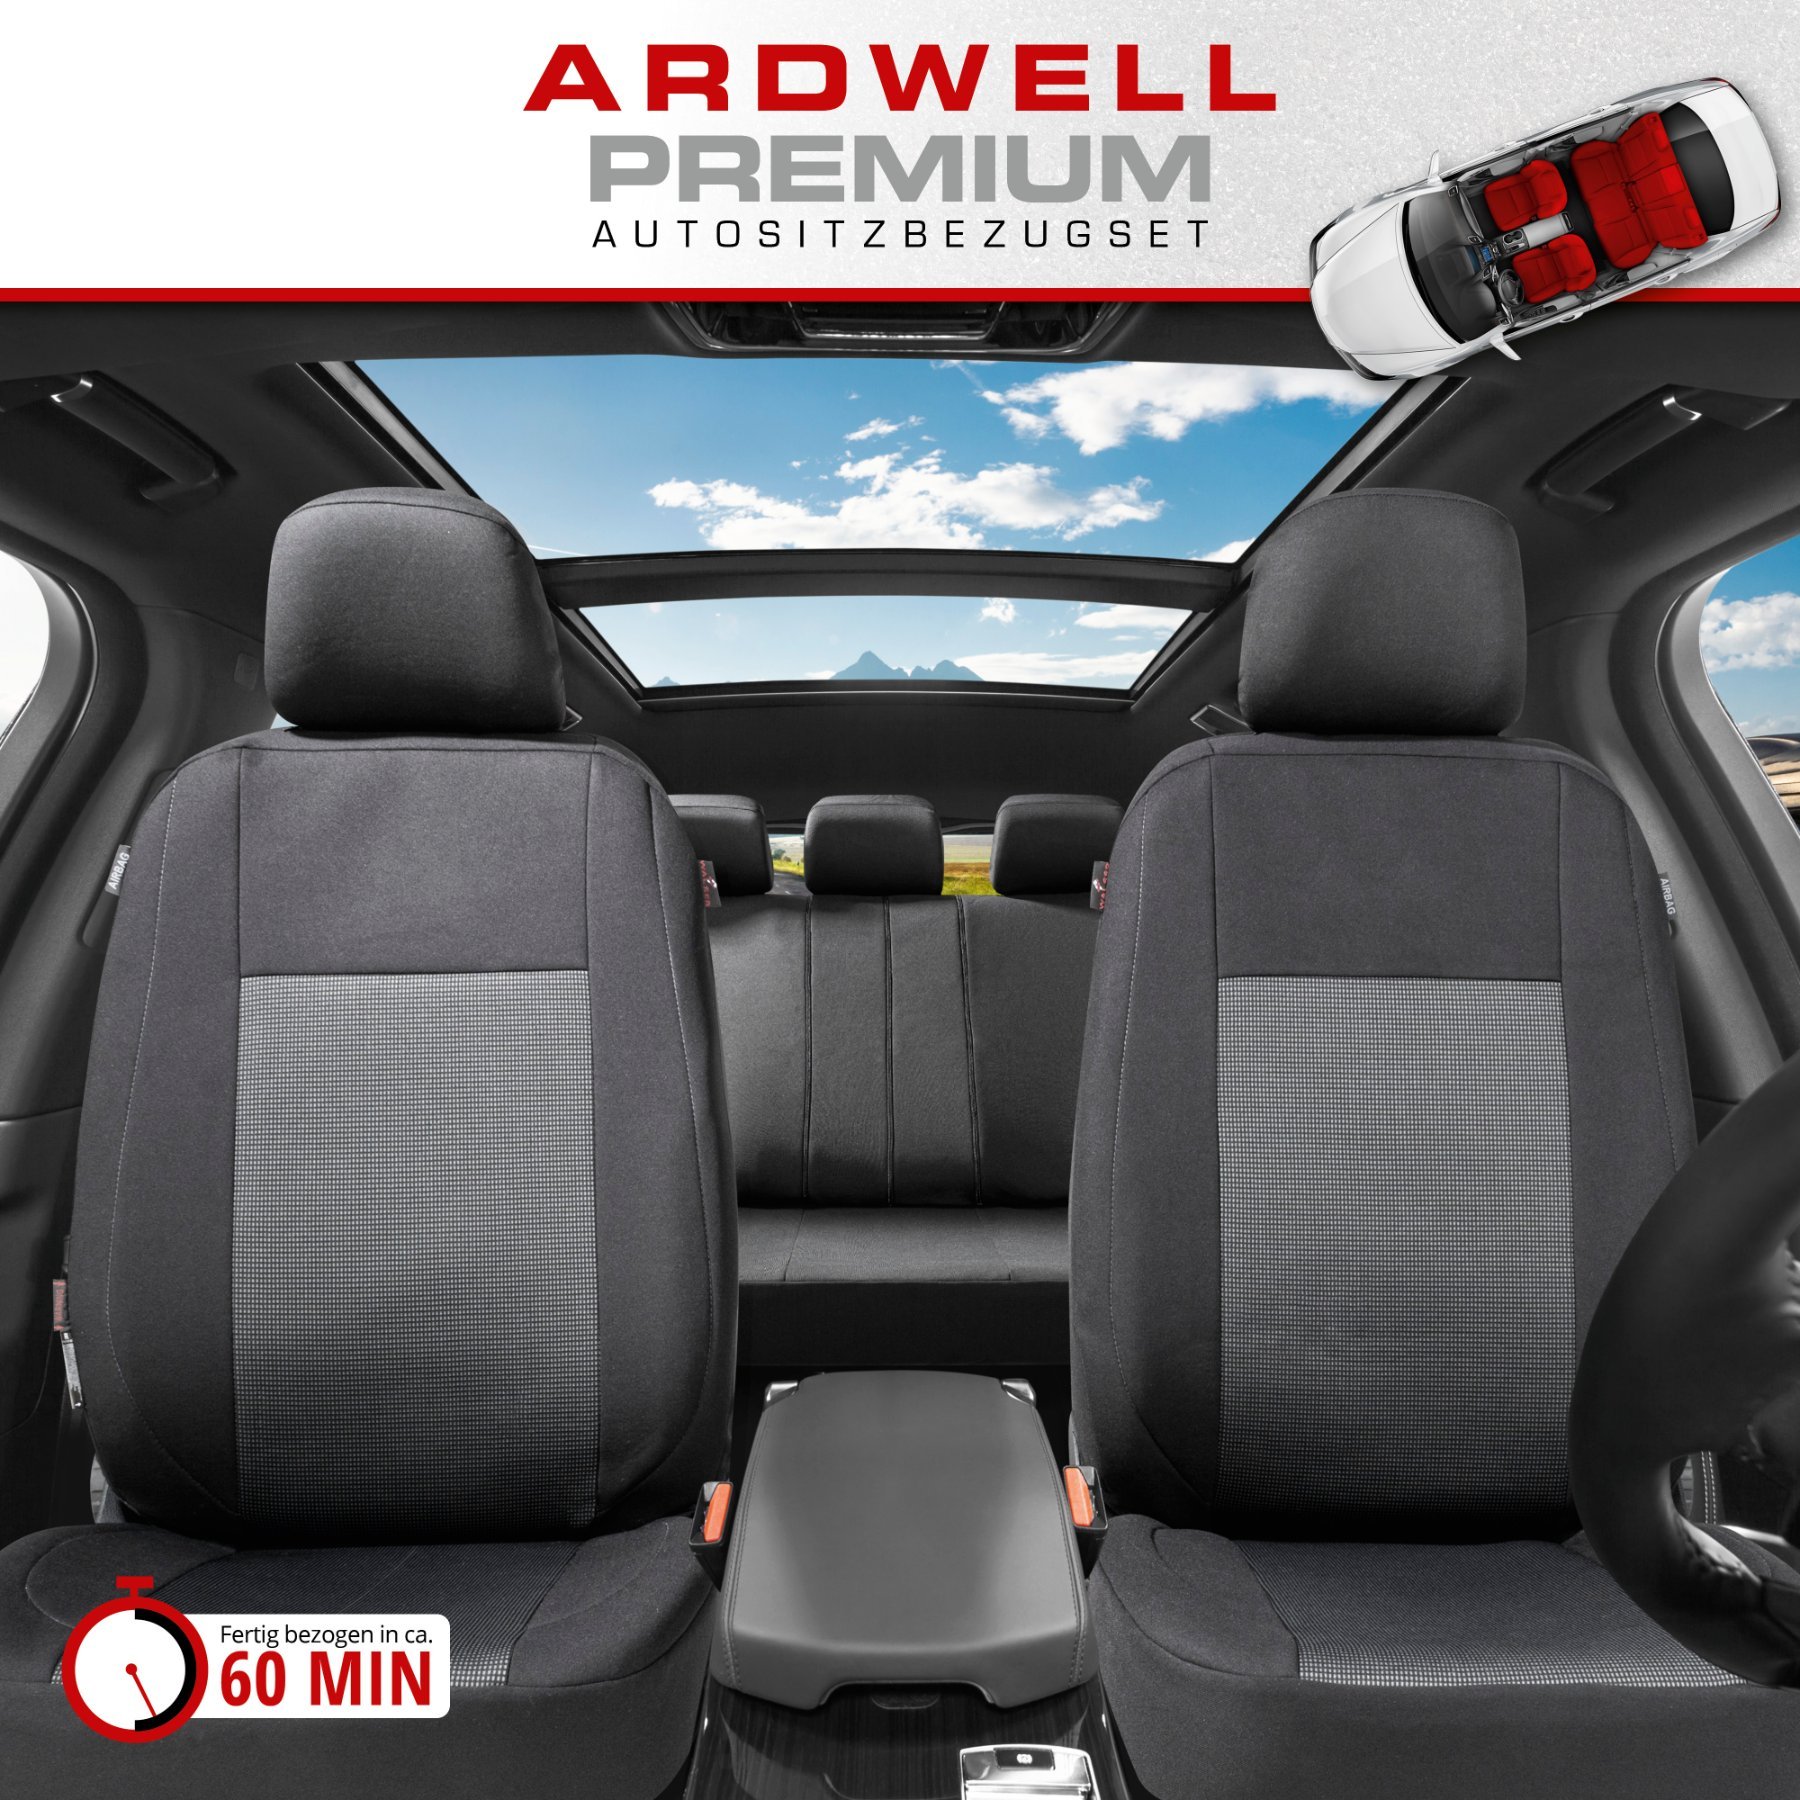 Autositzbezug ZIPP-IT Premium Ardwell, PKW-Schonbezüge Komplettset mit Reißverschluss-System schwarz/grau